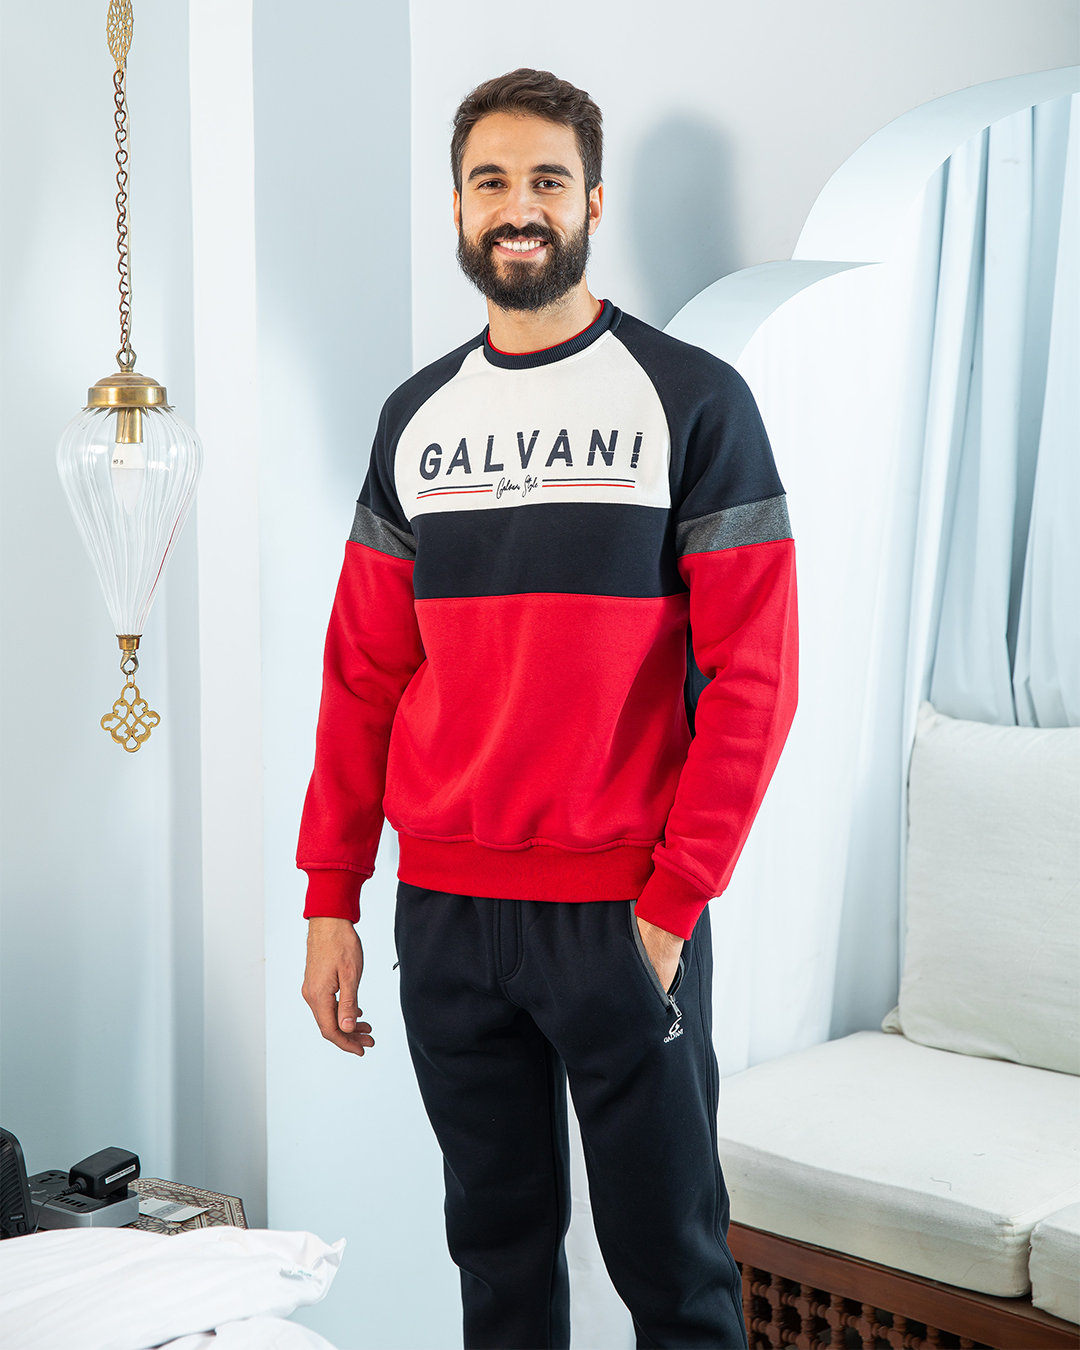 Galvani men's pajamas, rhubarb print